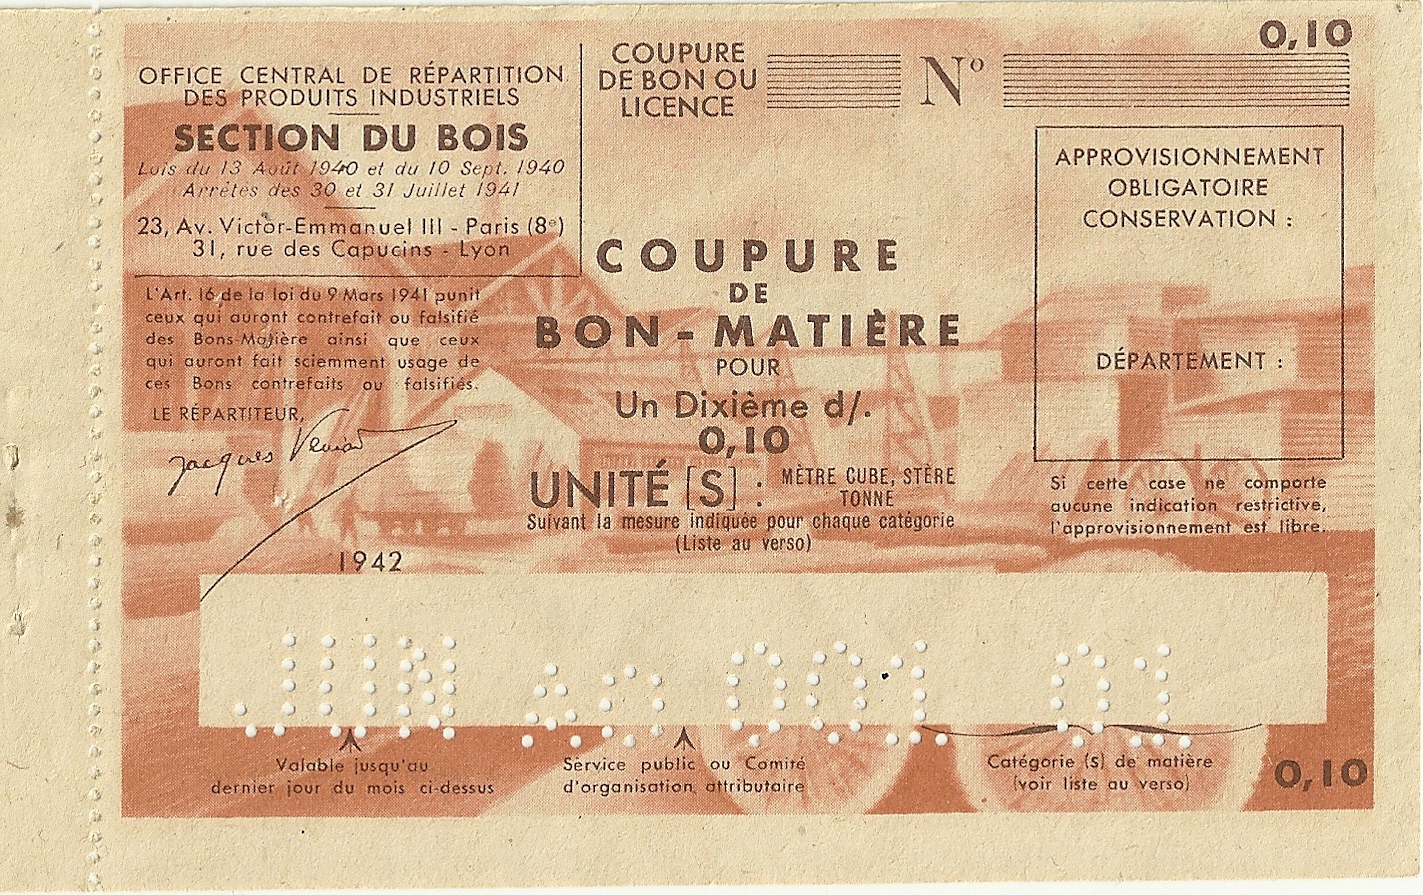 SECTION DU BOIS - COUPURE DE BON-MATIERE POUR 0,10 Un Dixième d'UNITE - S-NMR